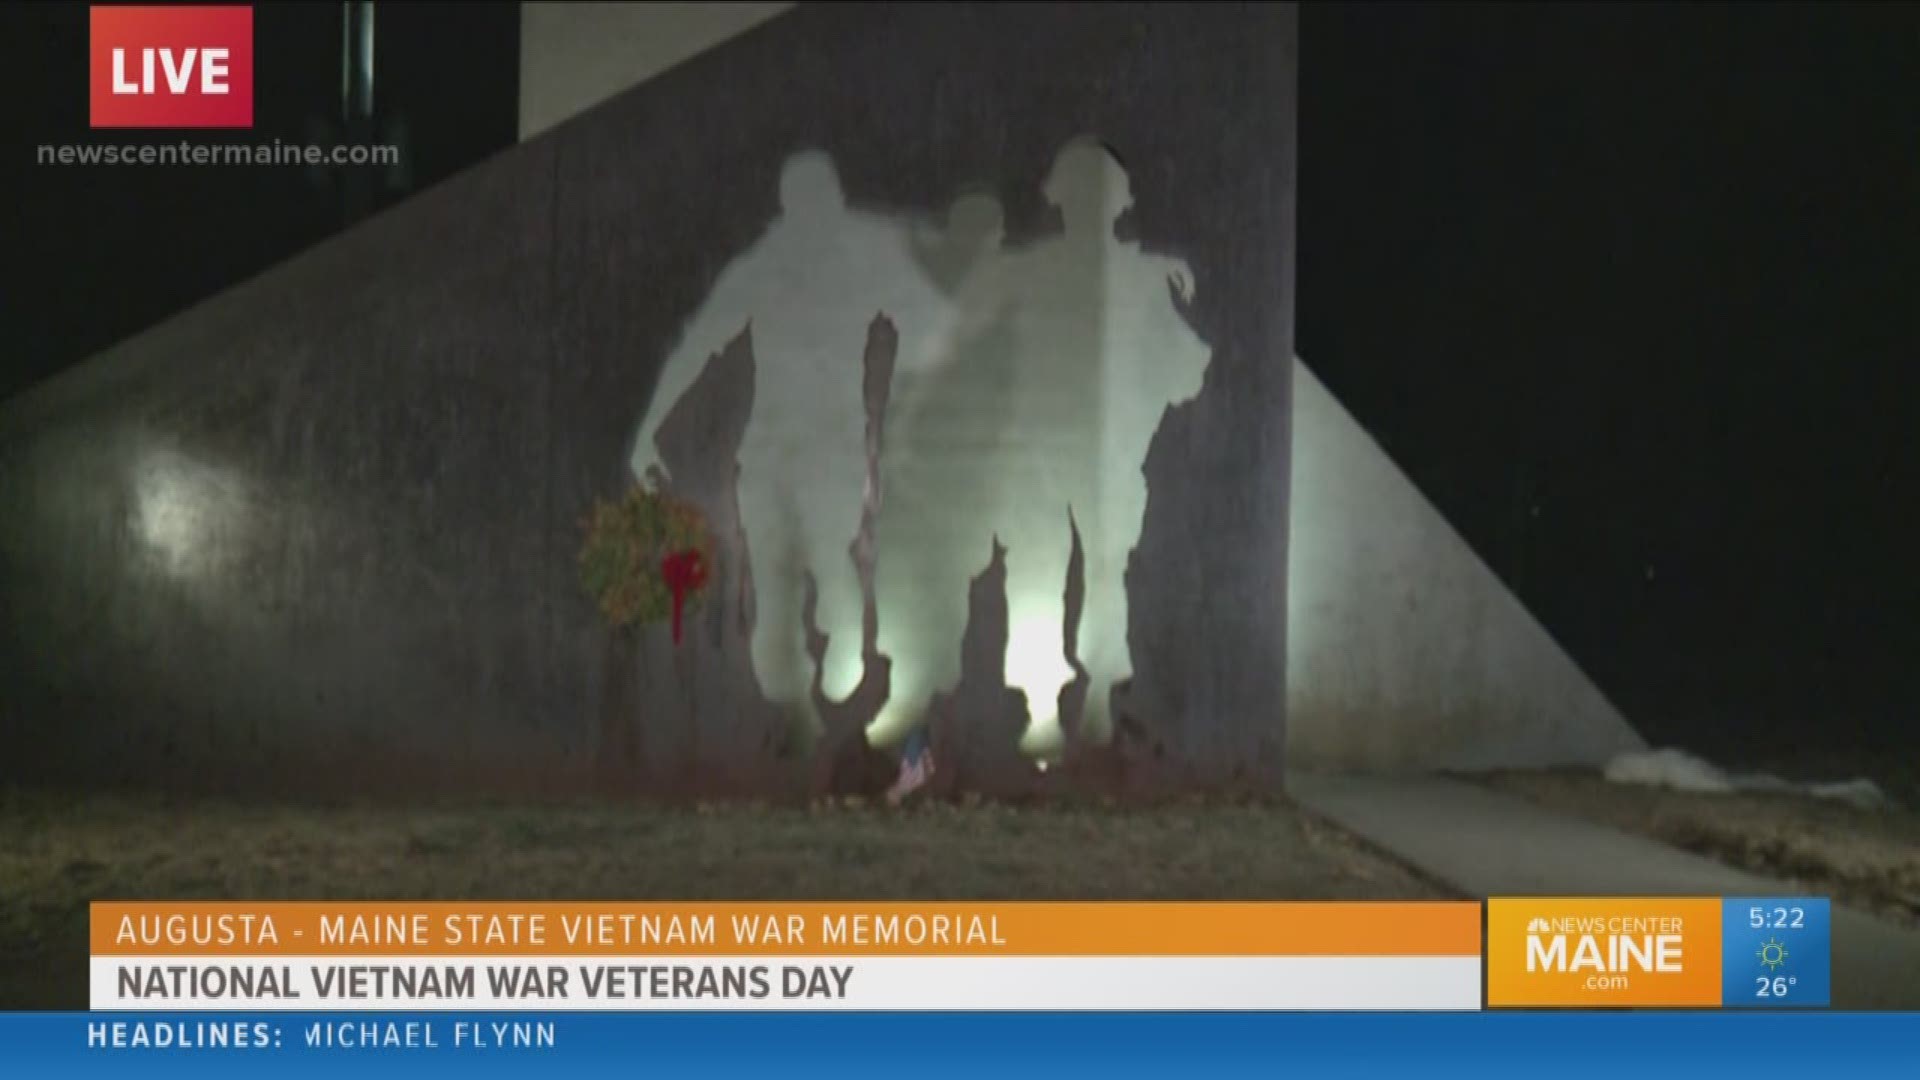 Maine's Vietnam vets honored